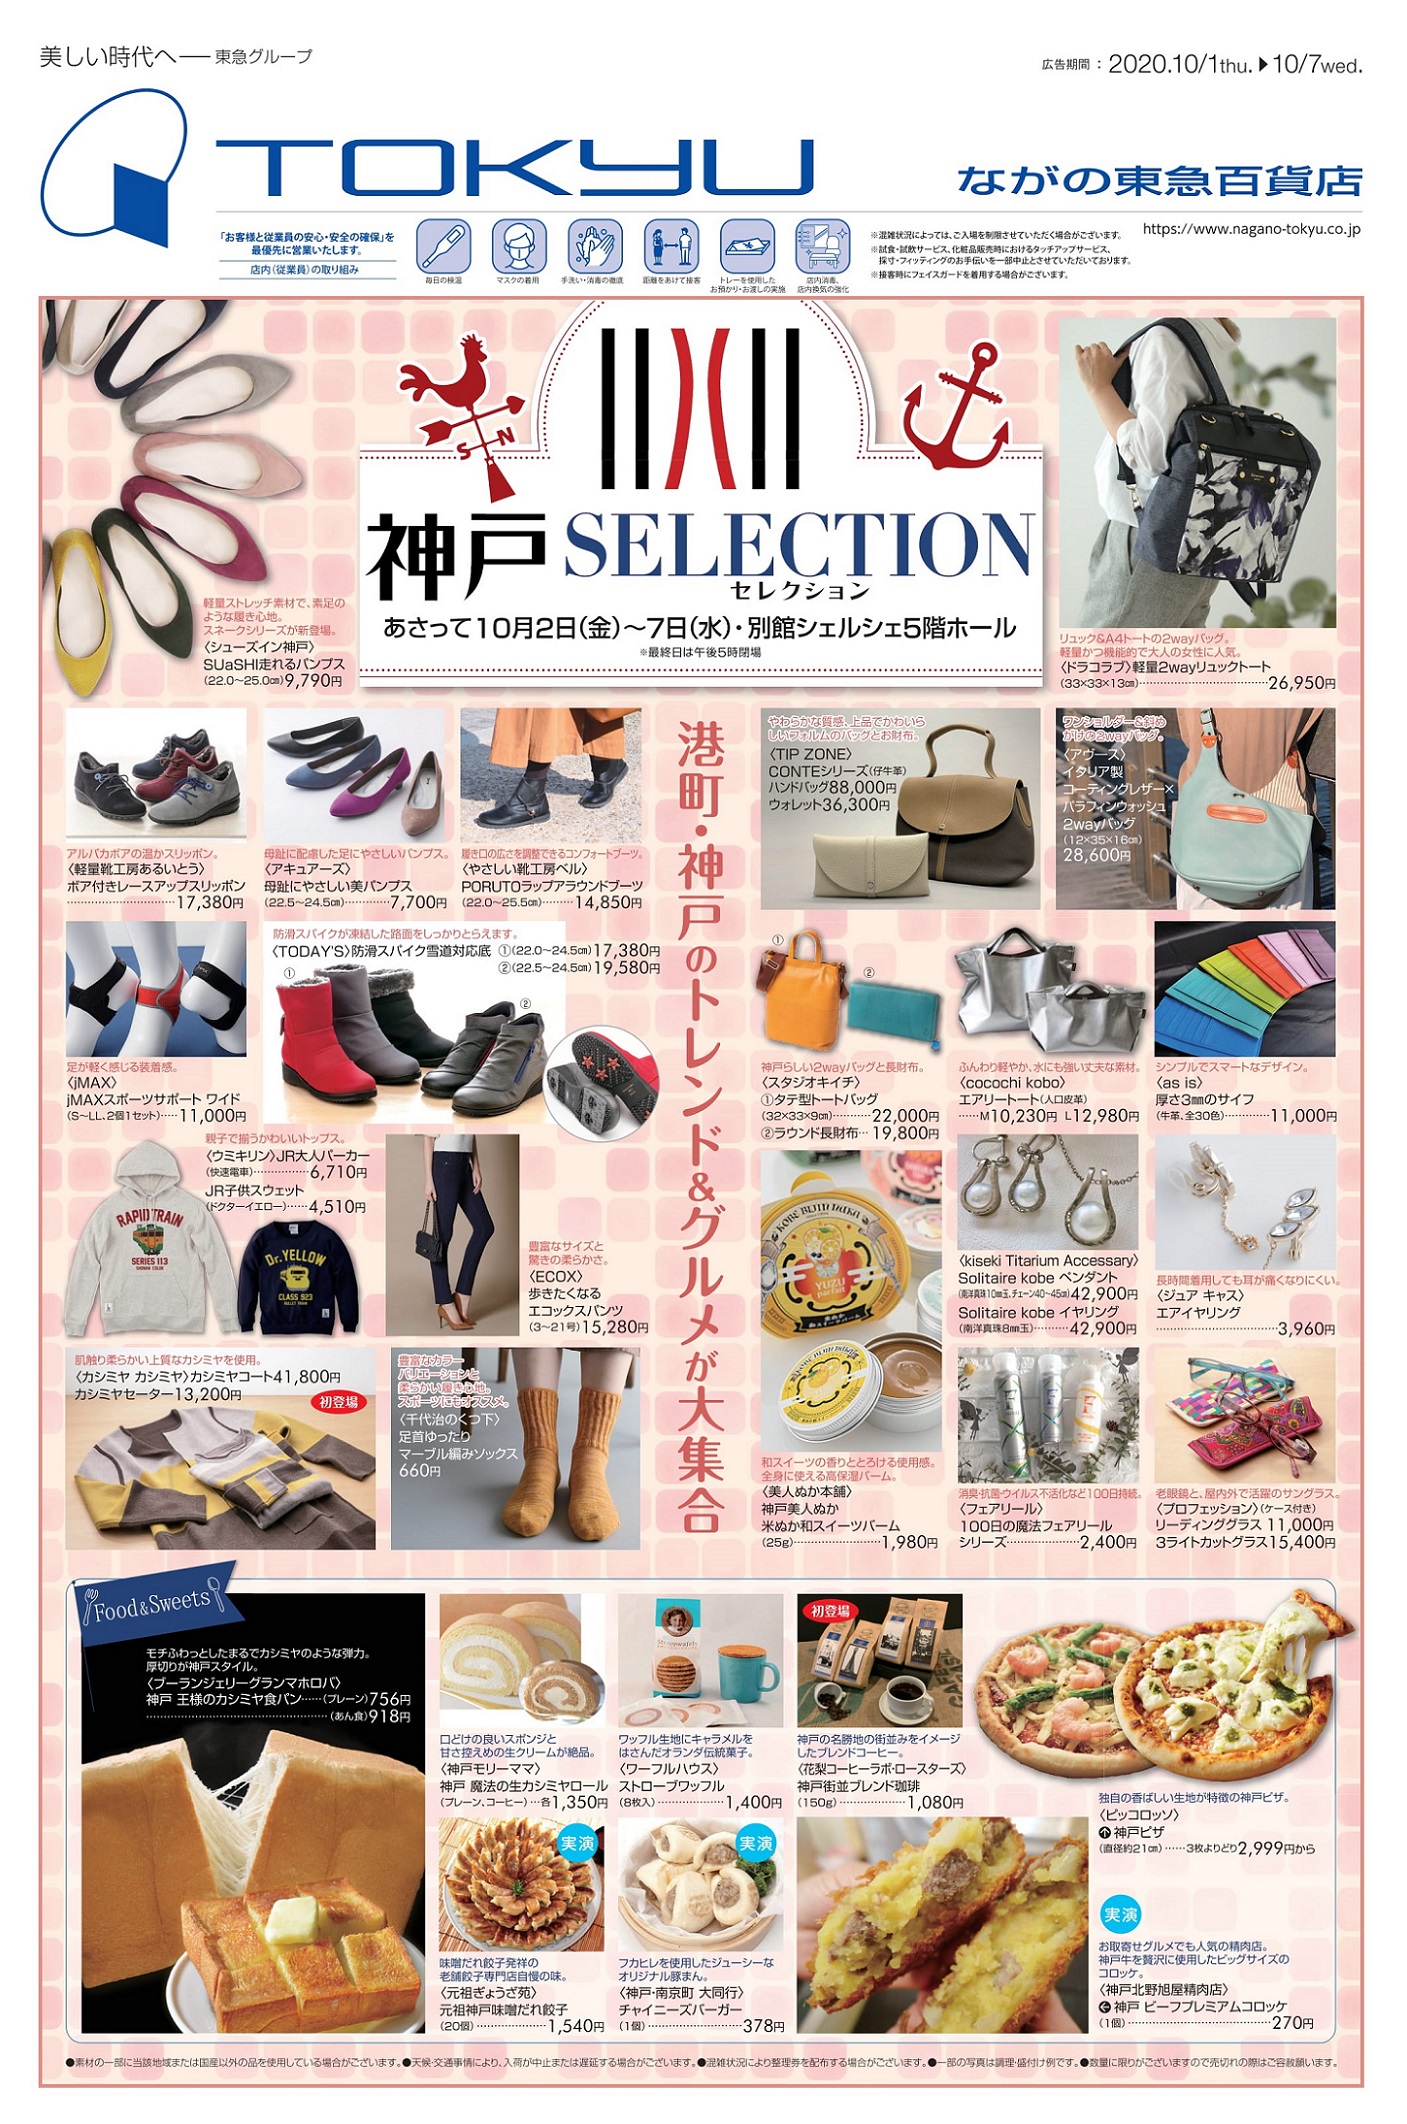 インフォメーション 神戸元町の革小物 革製品を中心としたレザーブランド Kiichi キイチ Part 9